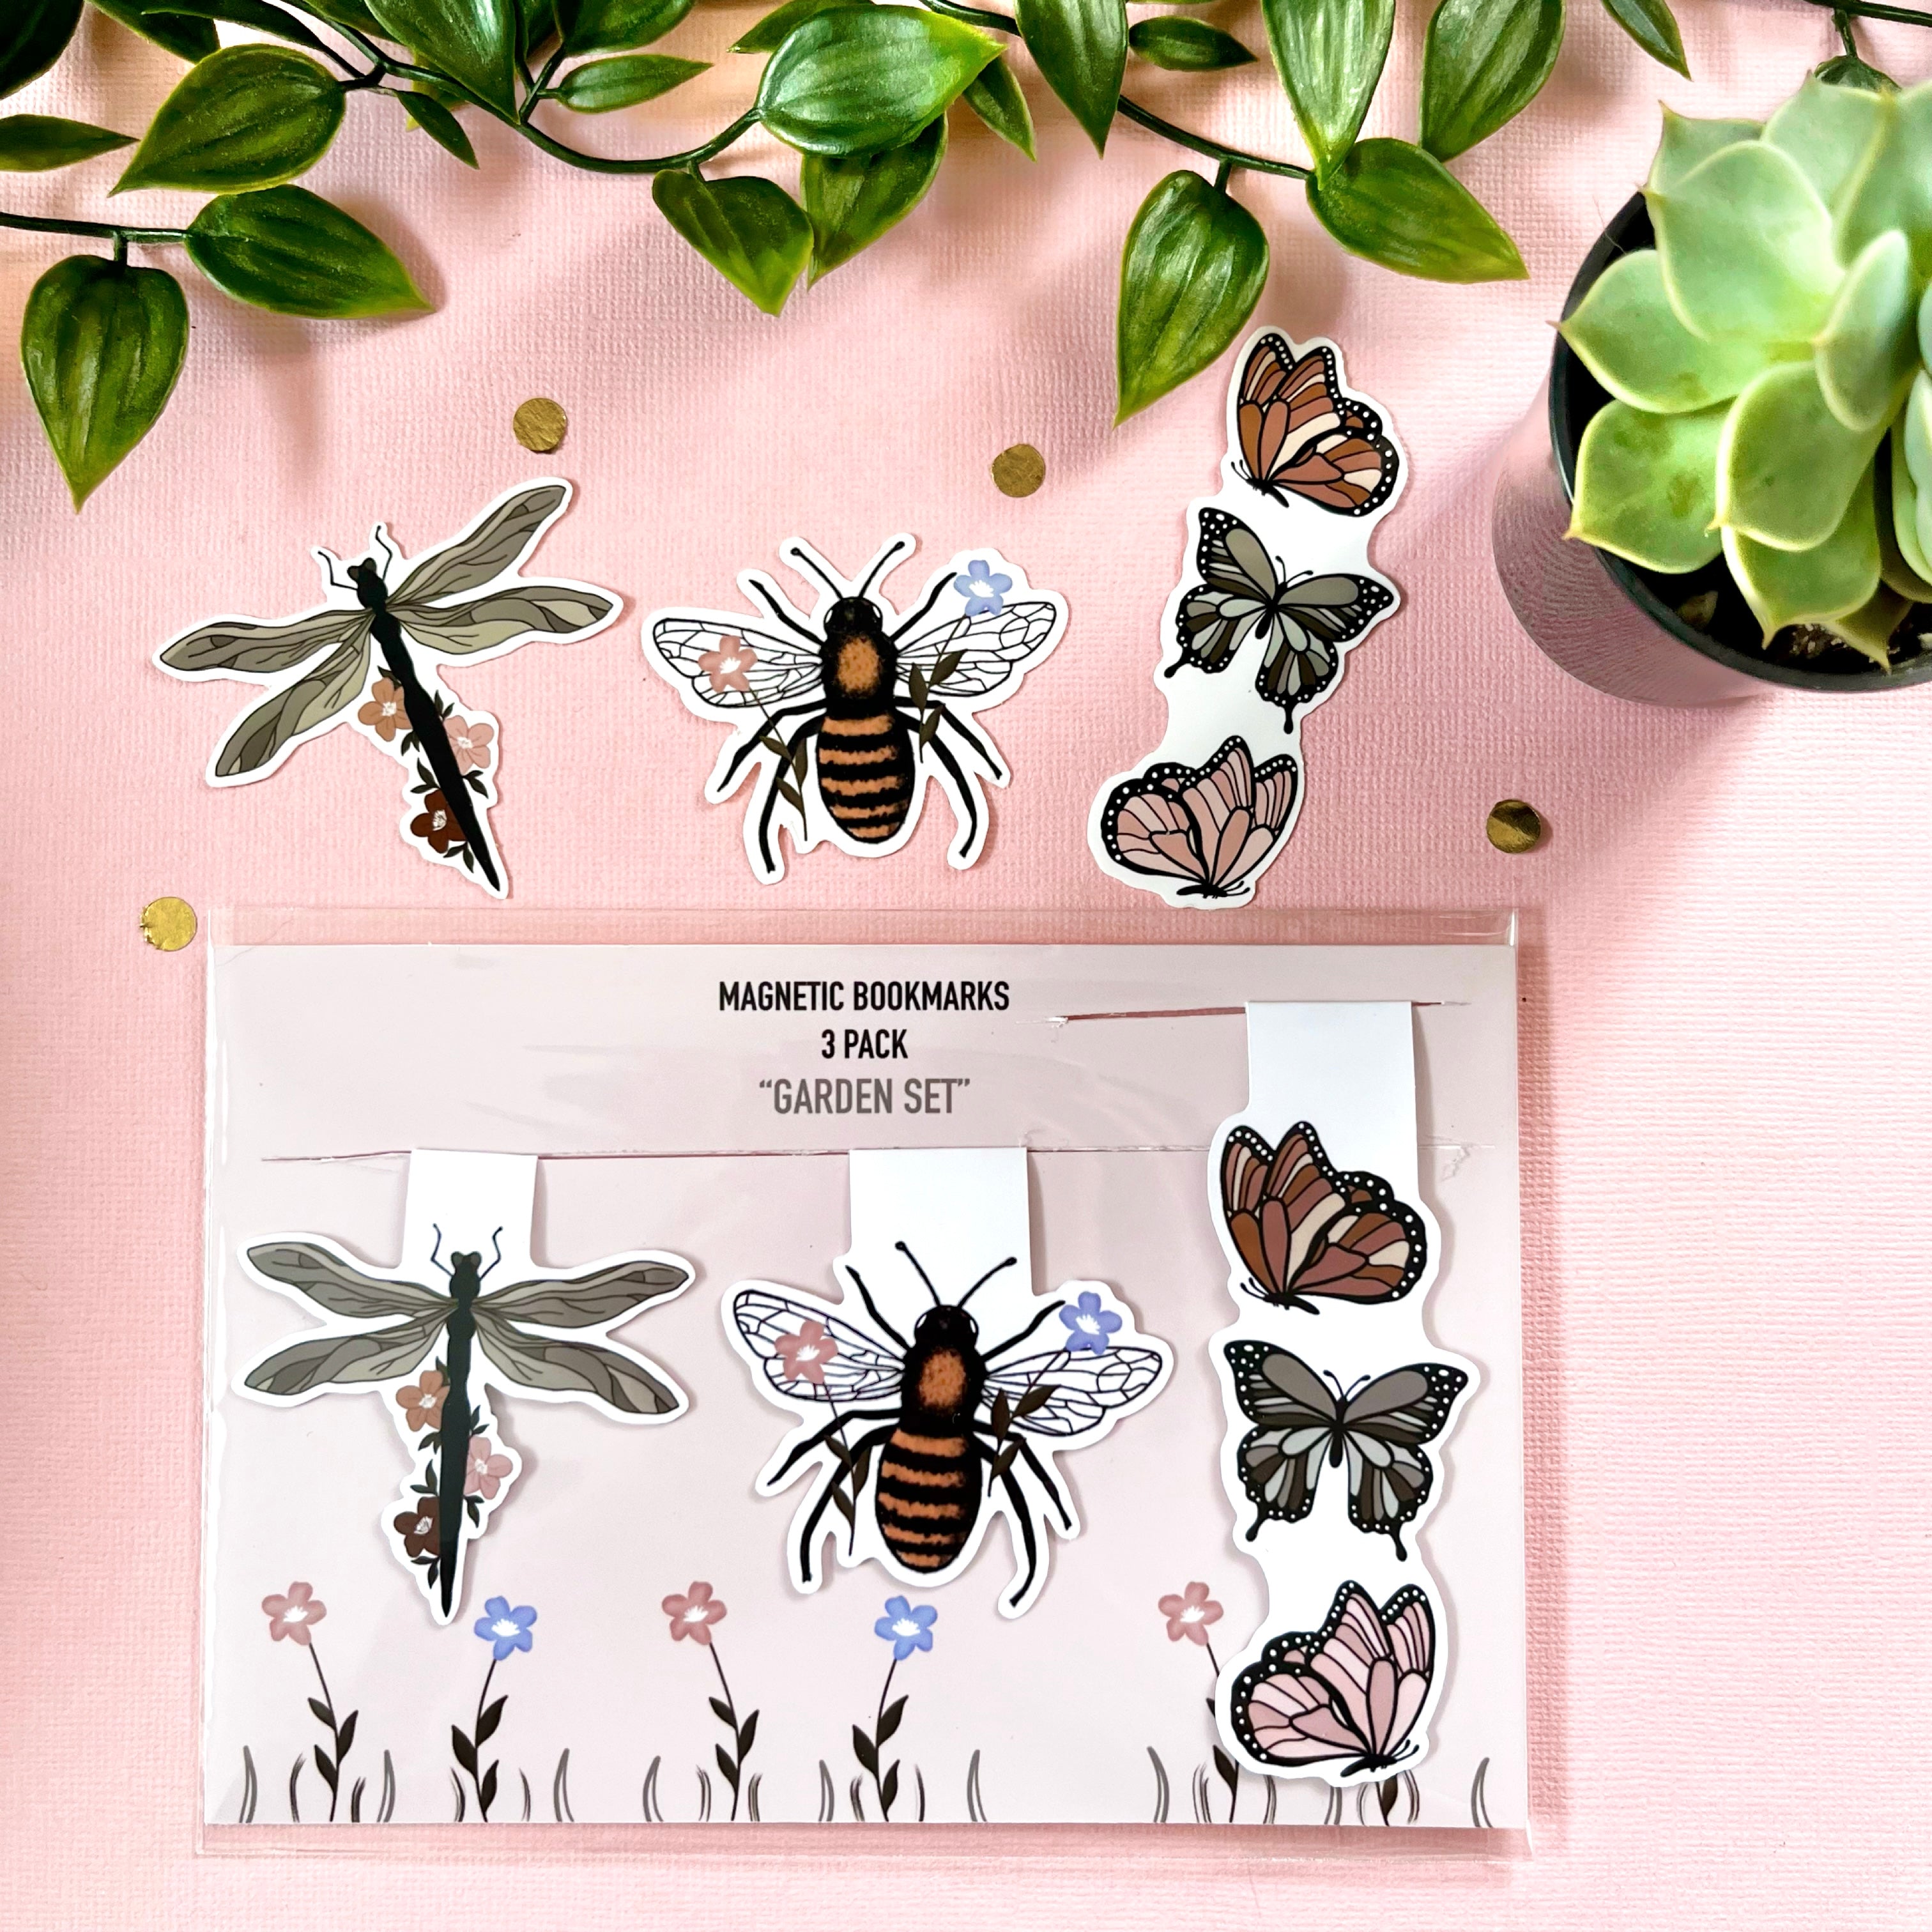 “Garden Set” Magnetic Bookmarks